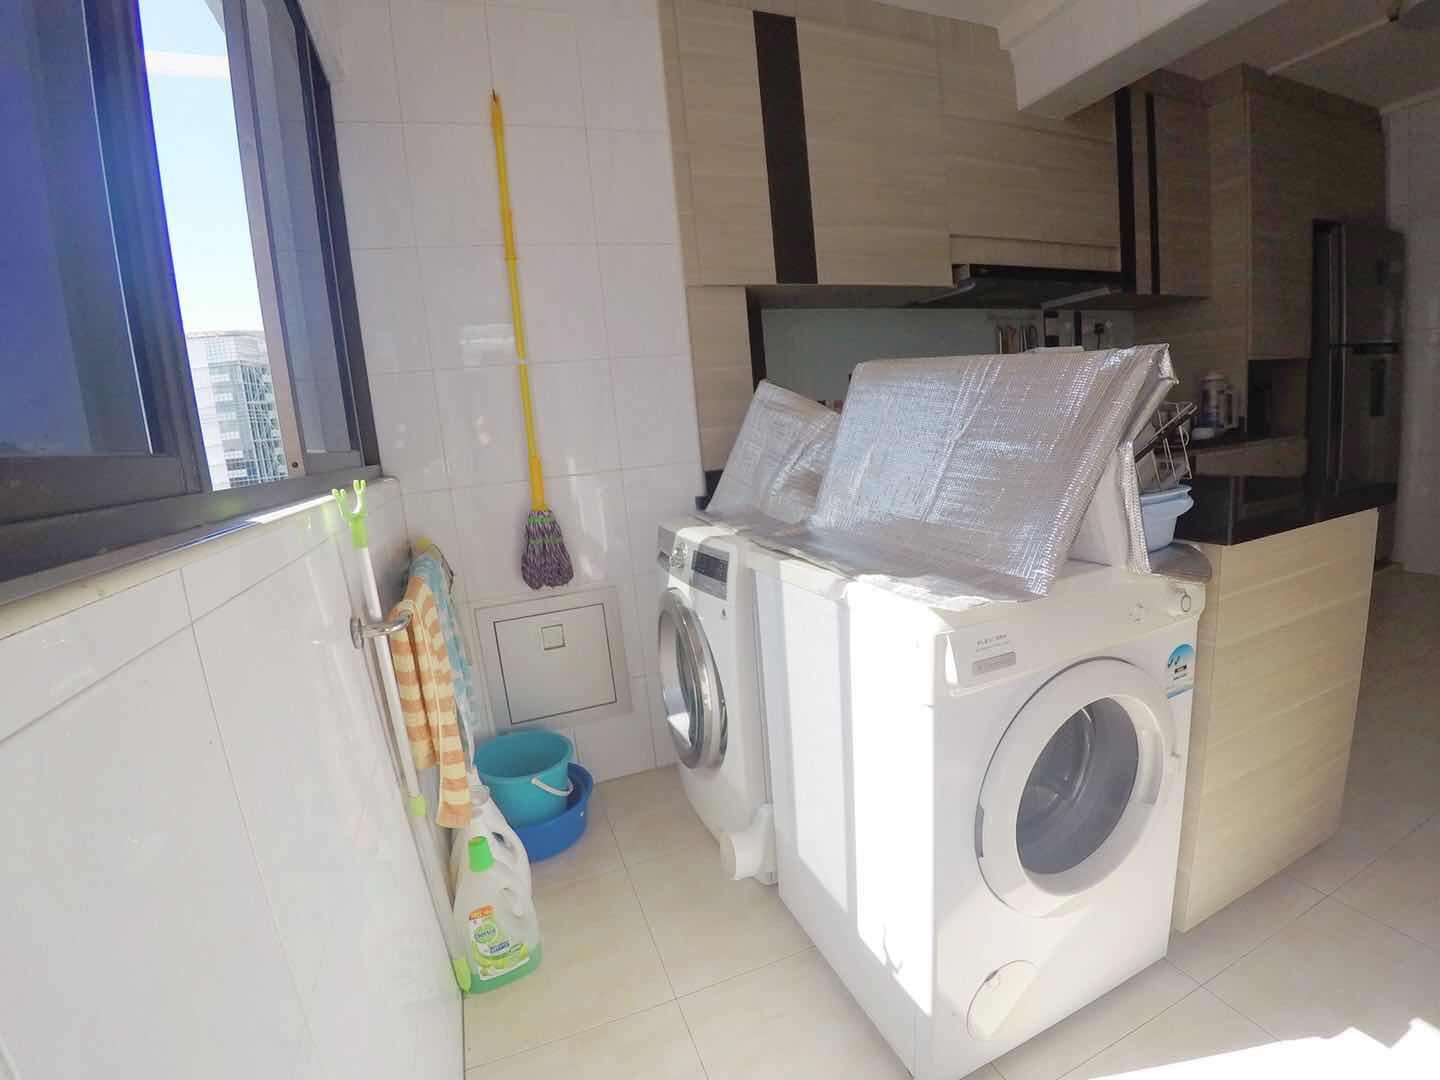 washing machine.jpeg